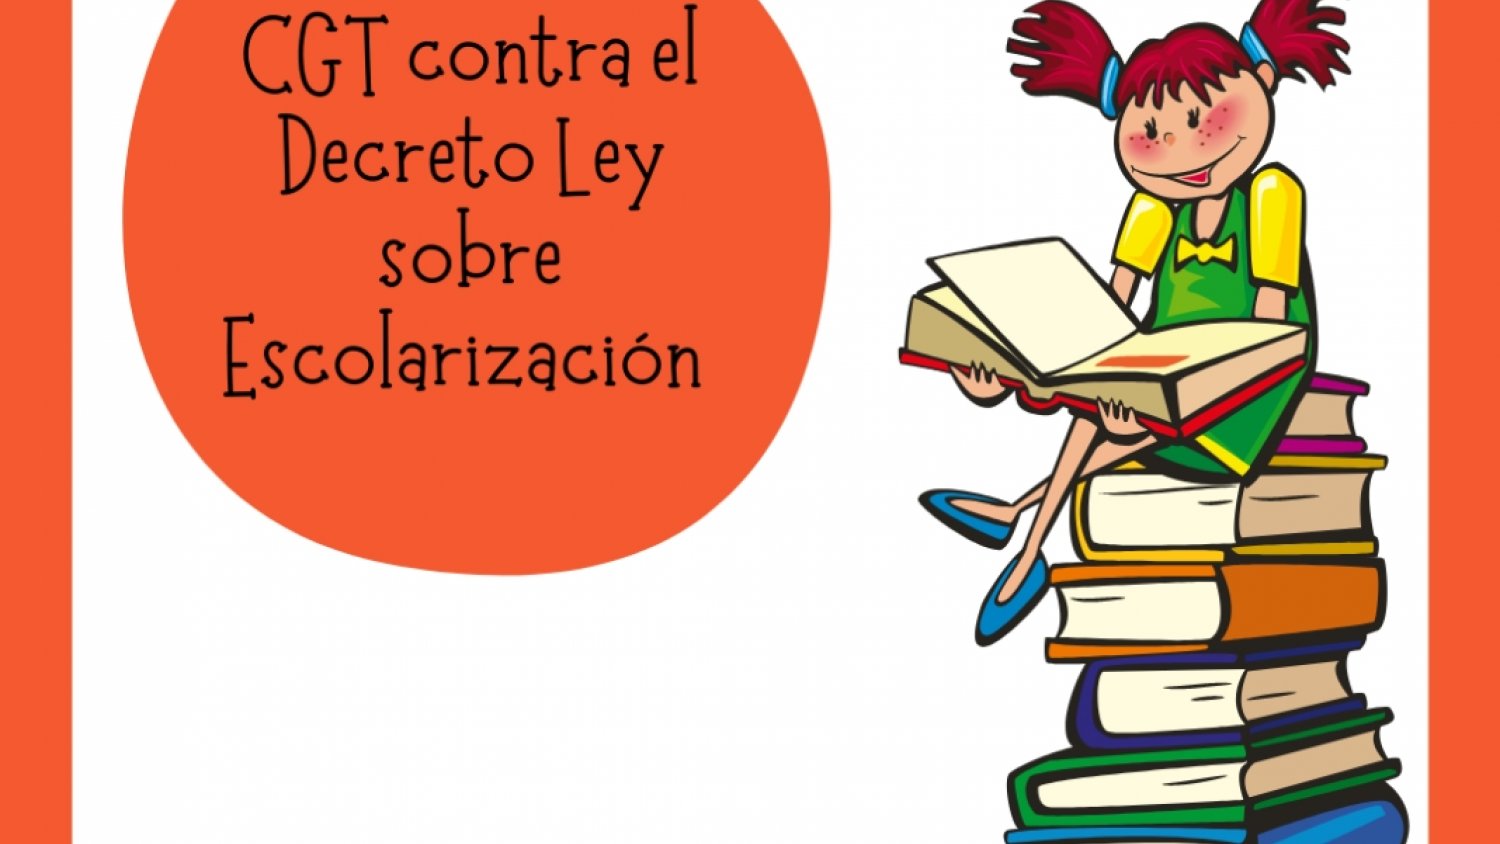 CGT exige al Gobierno Central que impugne el nuevo Decreto Ley sobre escolarización de la Junta